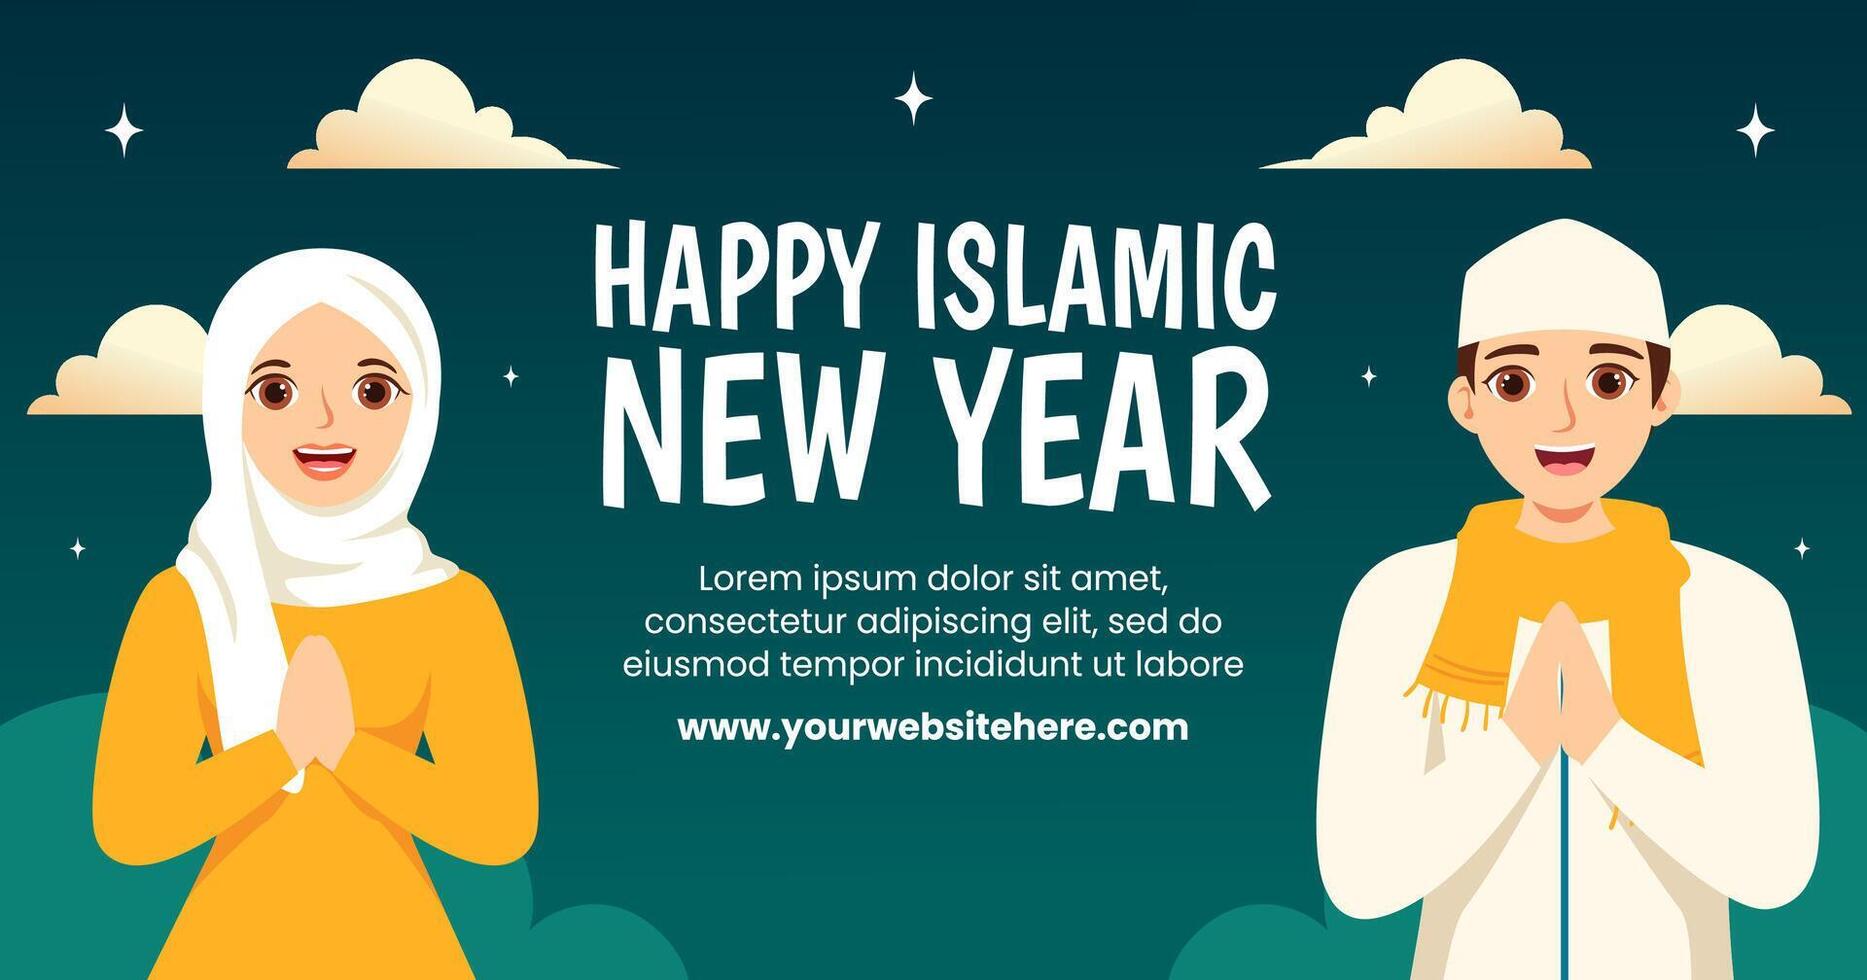 islámico nuevo año social medios de comunicación enviar plano dibujos animados mano dibujado plantillas antecedentes ilustración vector